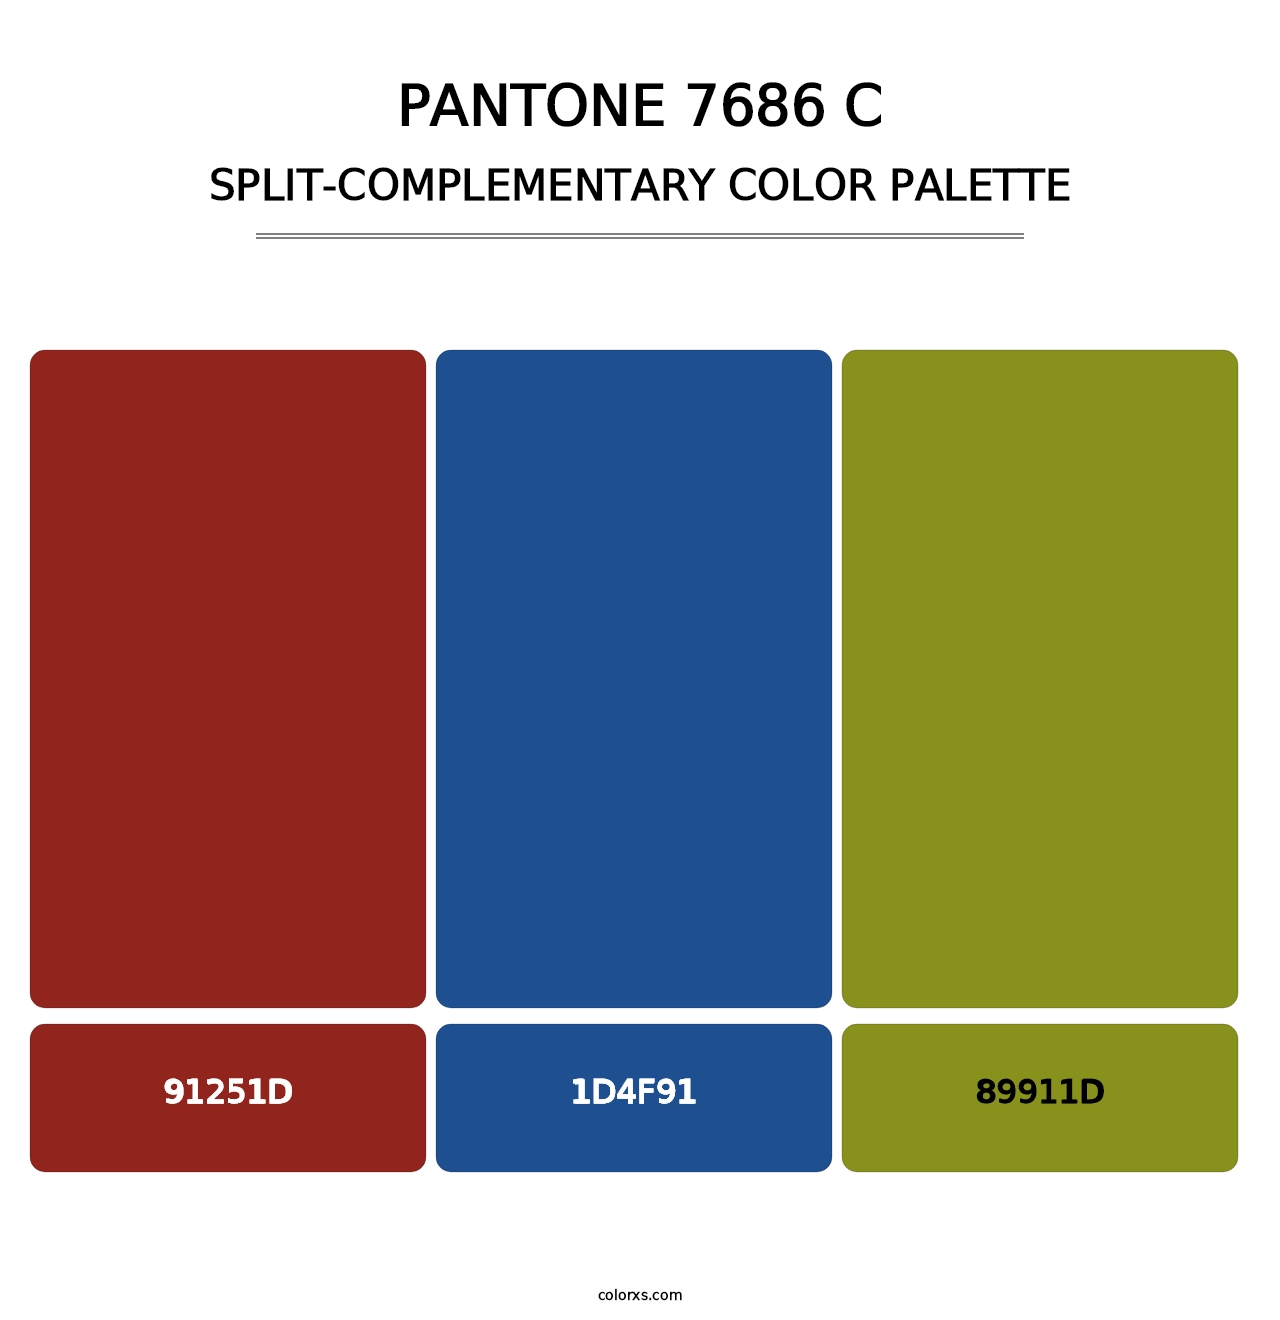 PANTONE 7686 C - Split-Complementary Color Palette